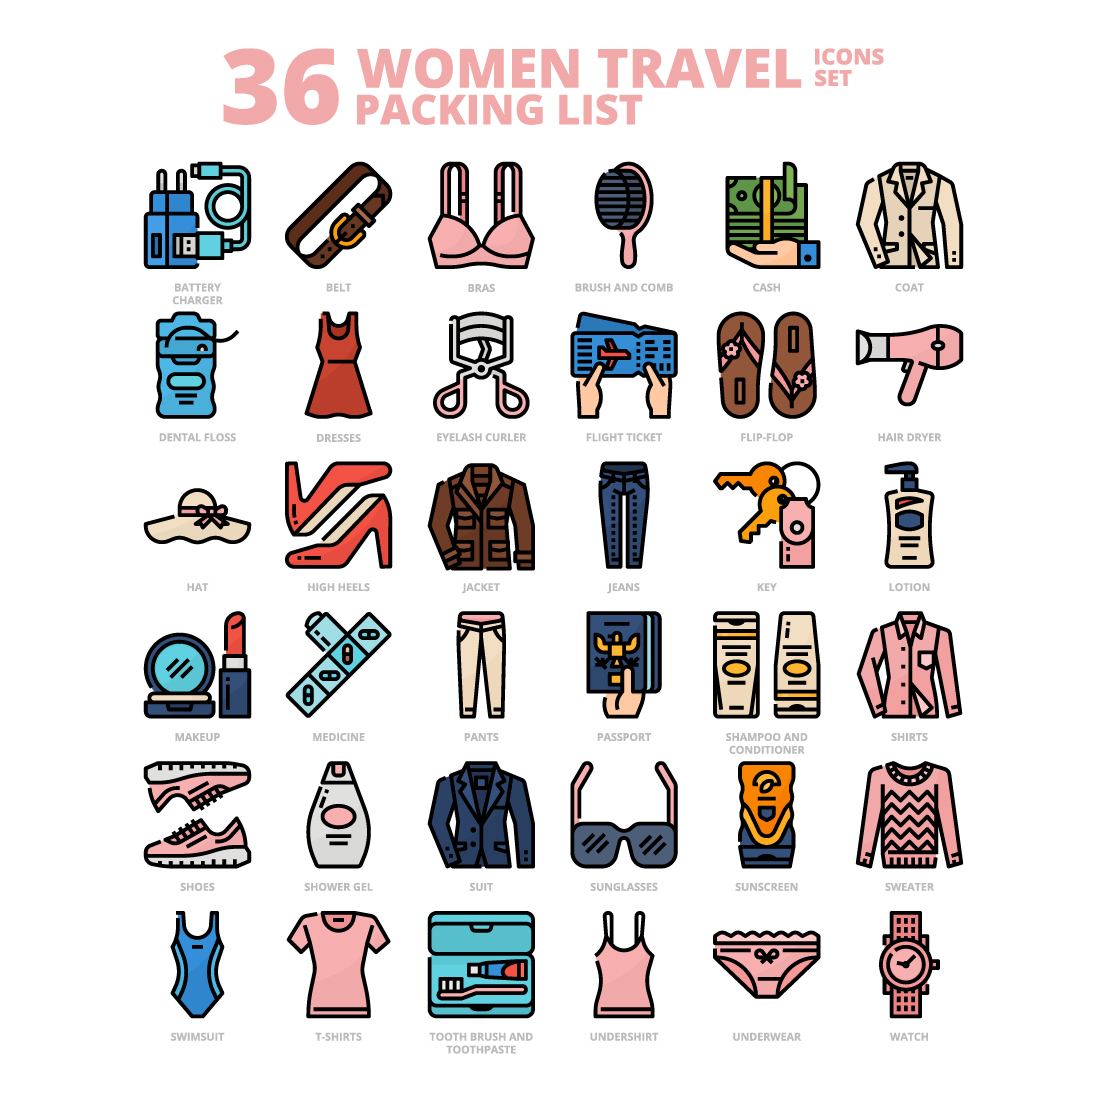 packing list for women